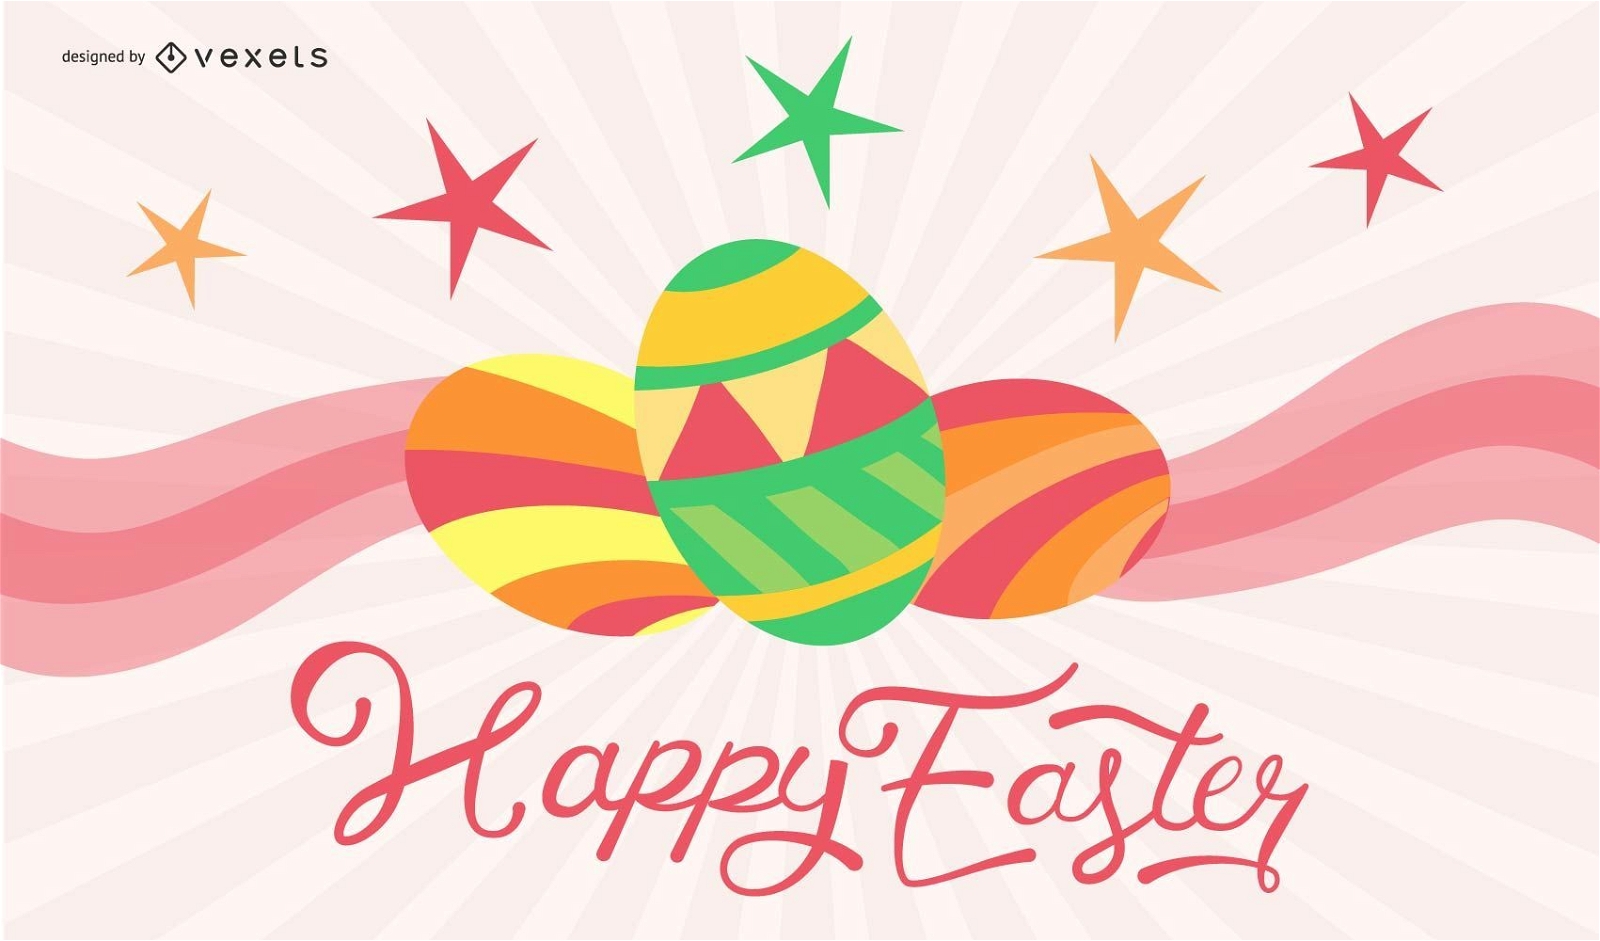 Eggcellent Easter Card